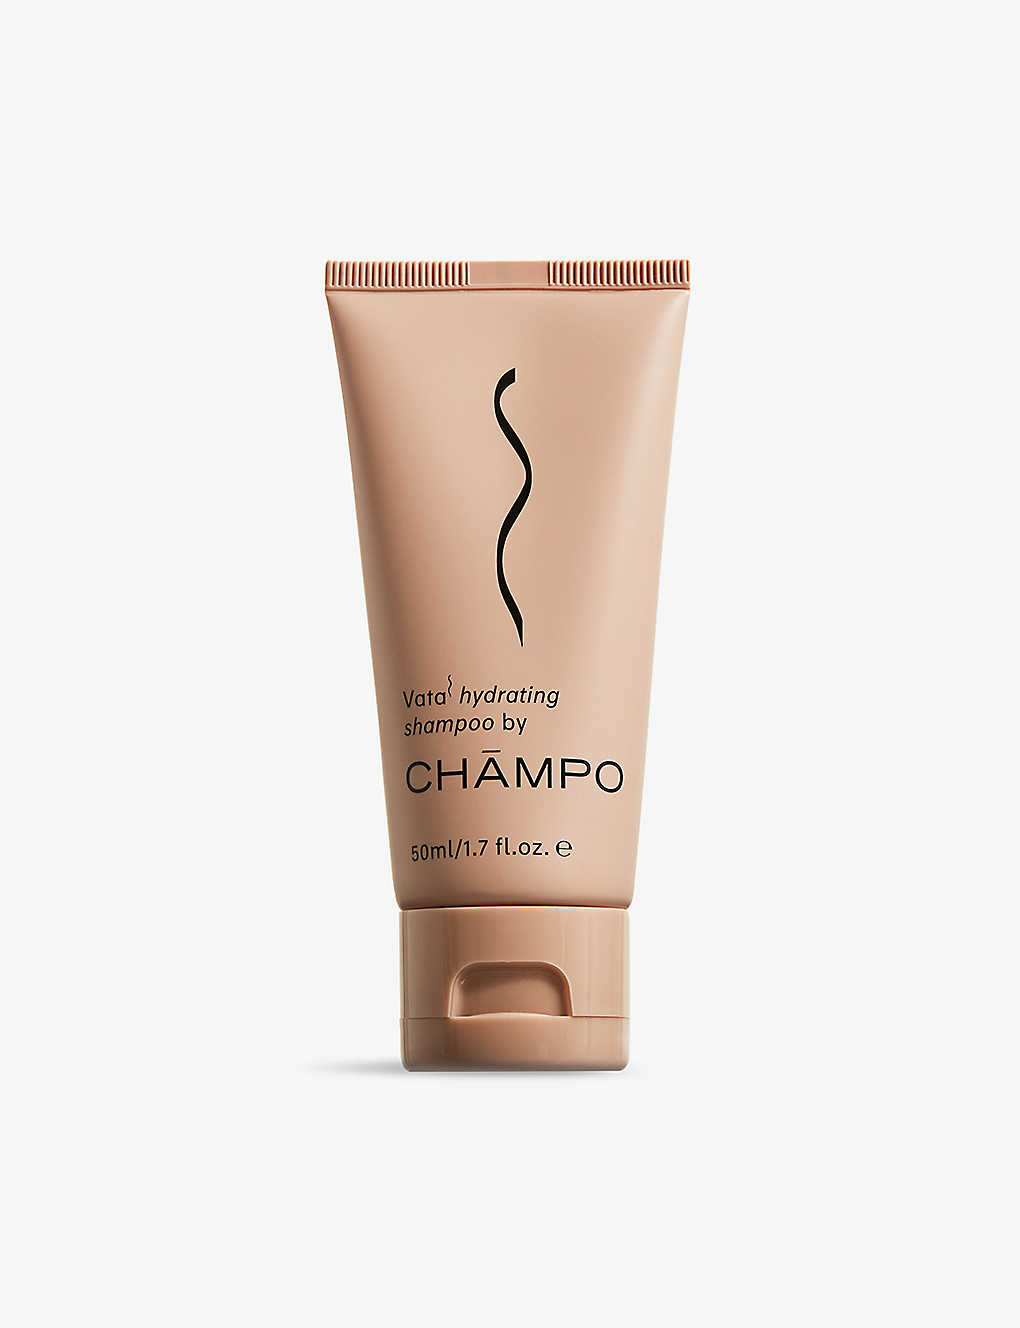 Champo Vata Hydrating Shampoo